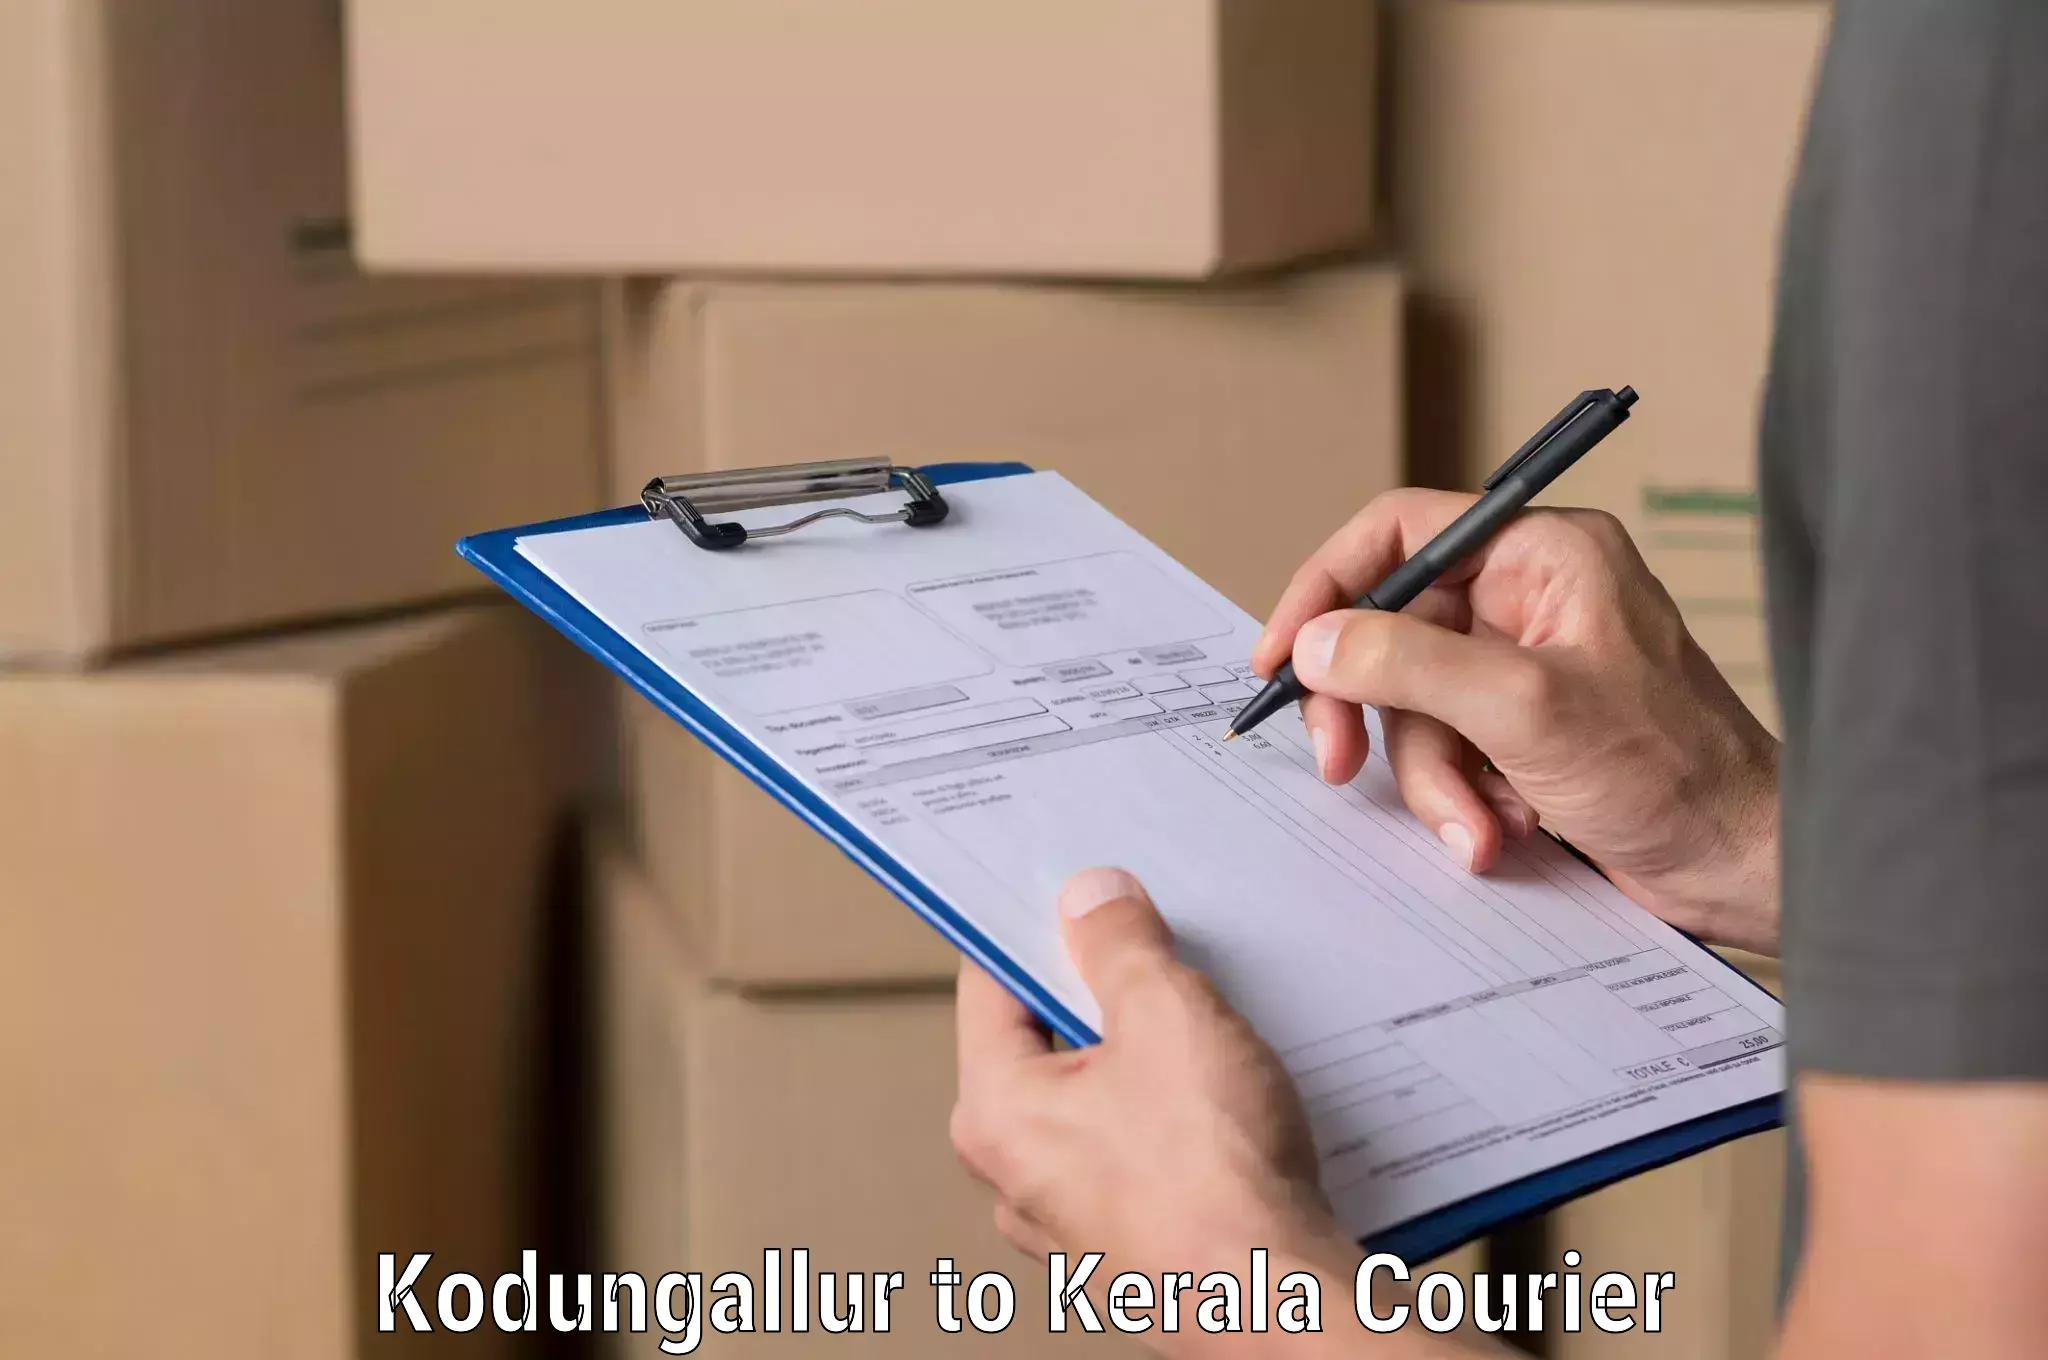 Customizable shipping options Kodungallur to Pala